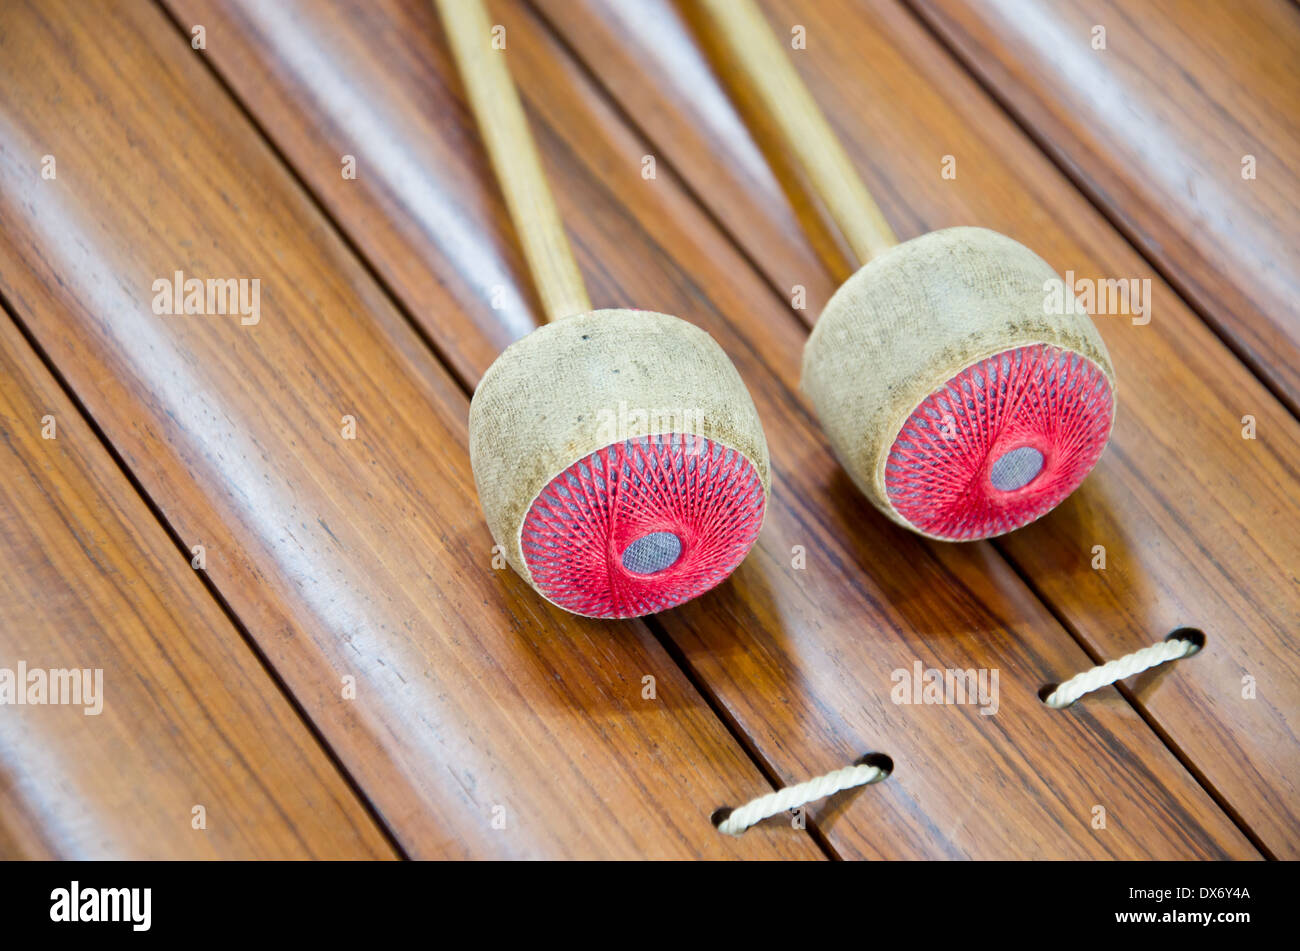 Thai xylophone instrument de musique d'Asie Banque D'Images